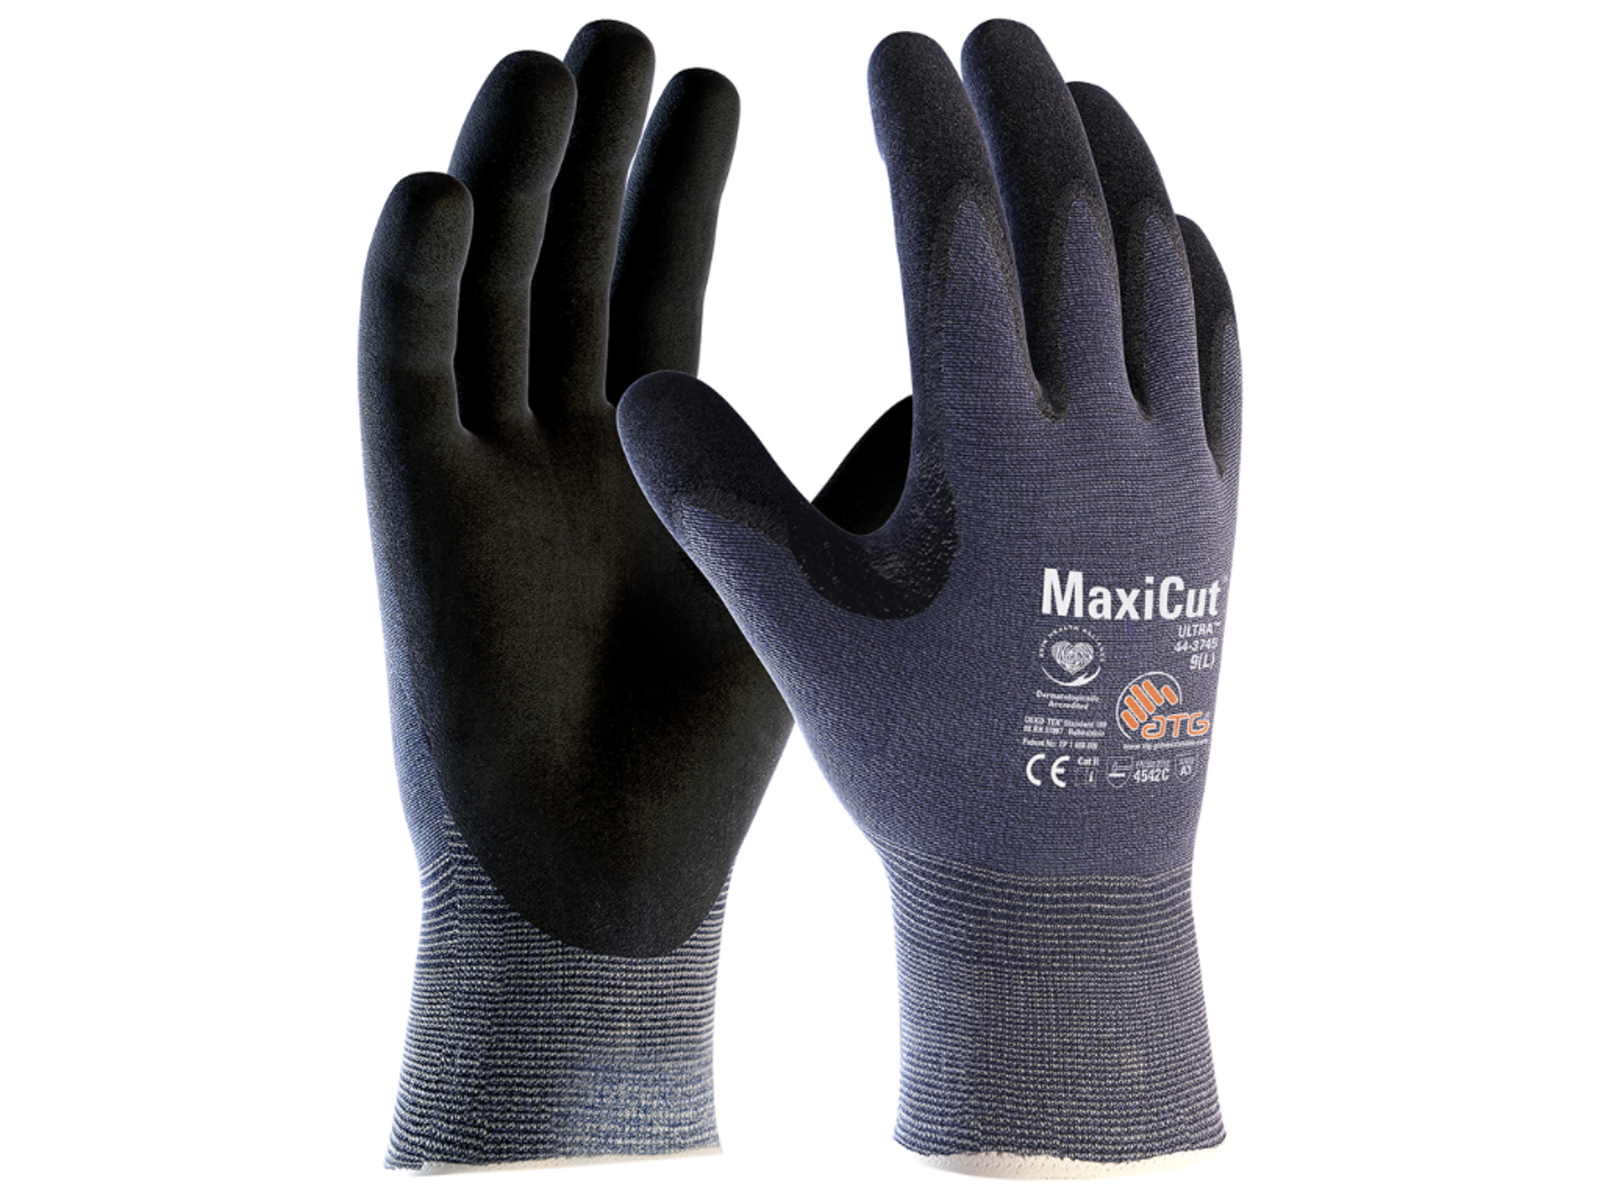 Protiporézne rukavice ATG MaxiCut Ultra 44-3745 - veľkosť: 11/XXL, farba: modrá